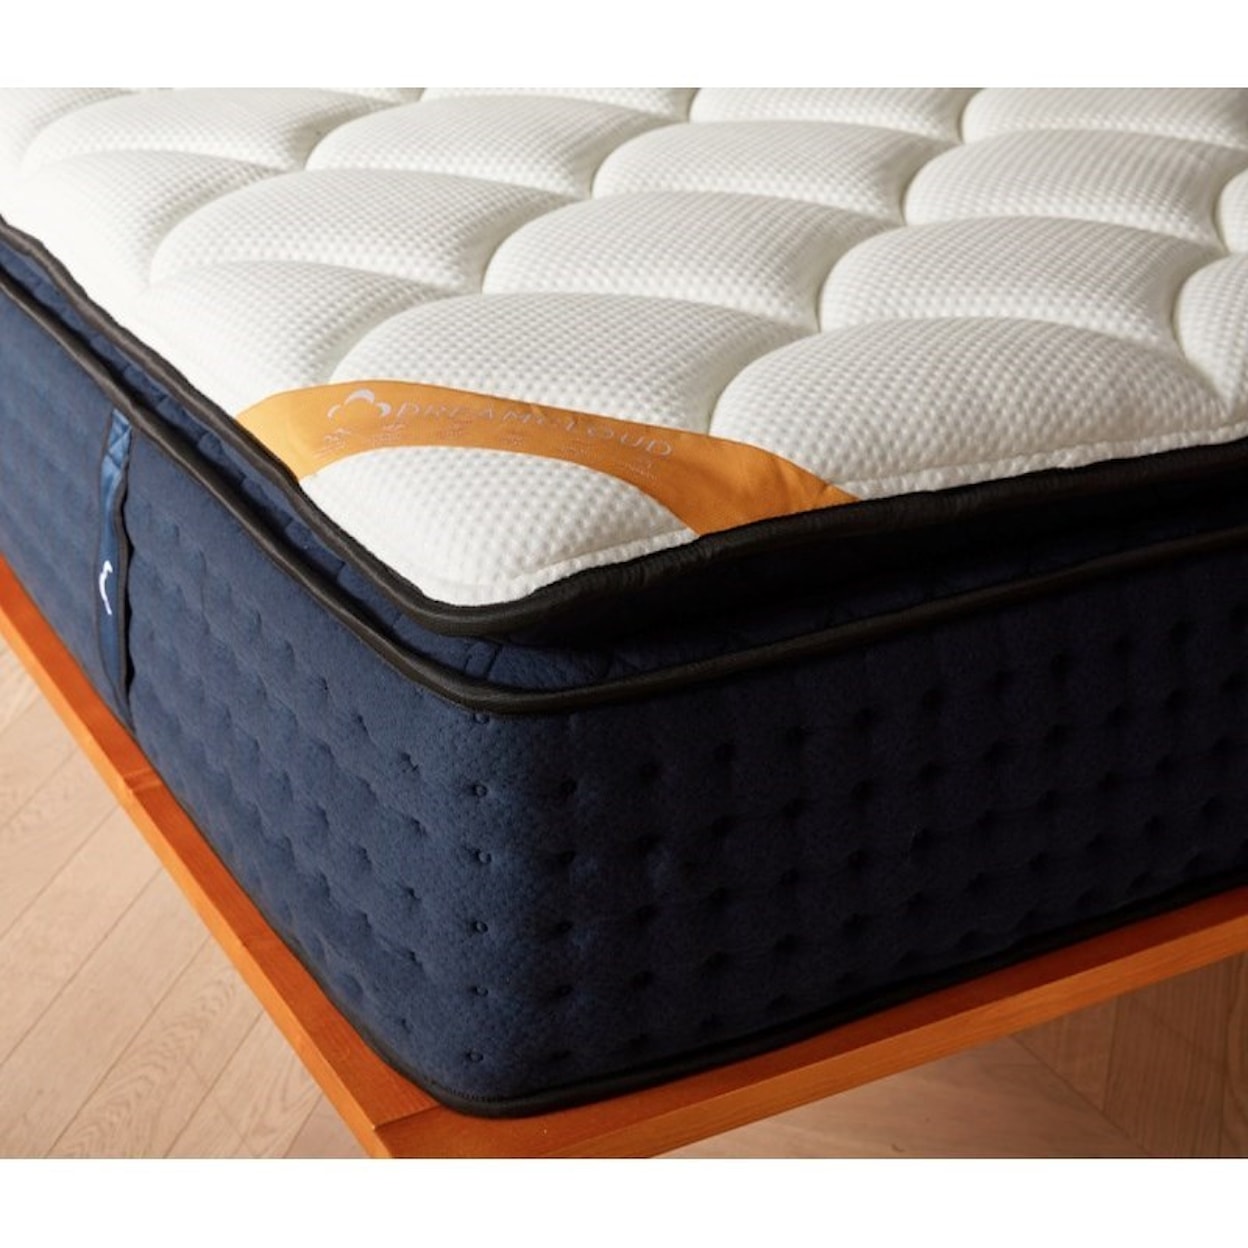 DreamCloud Dream Cloud Premier Rest Pillow Top Full 16" Hybrid Pillow Top Mattress